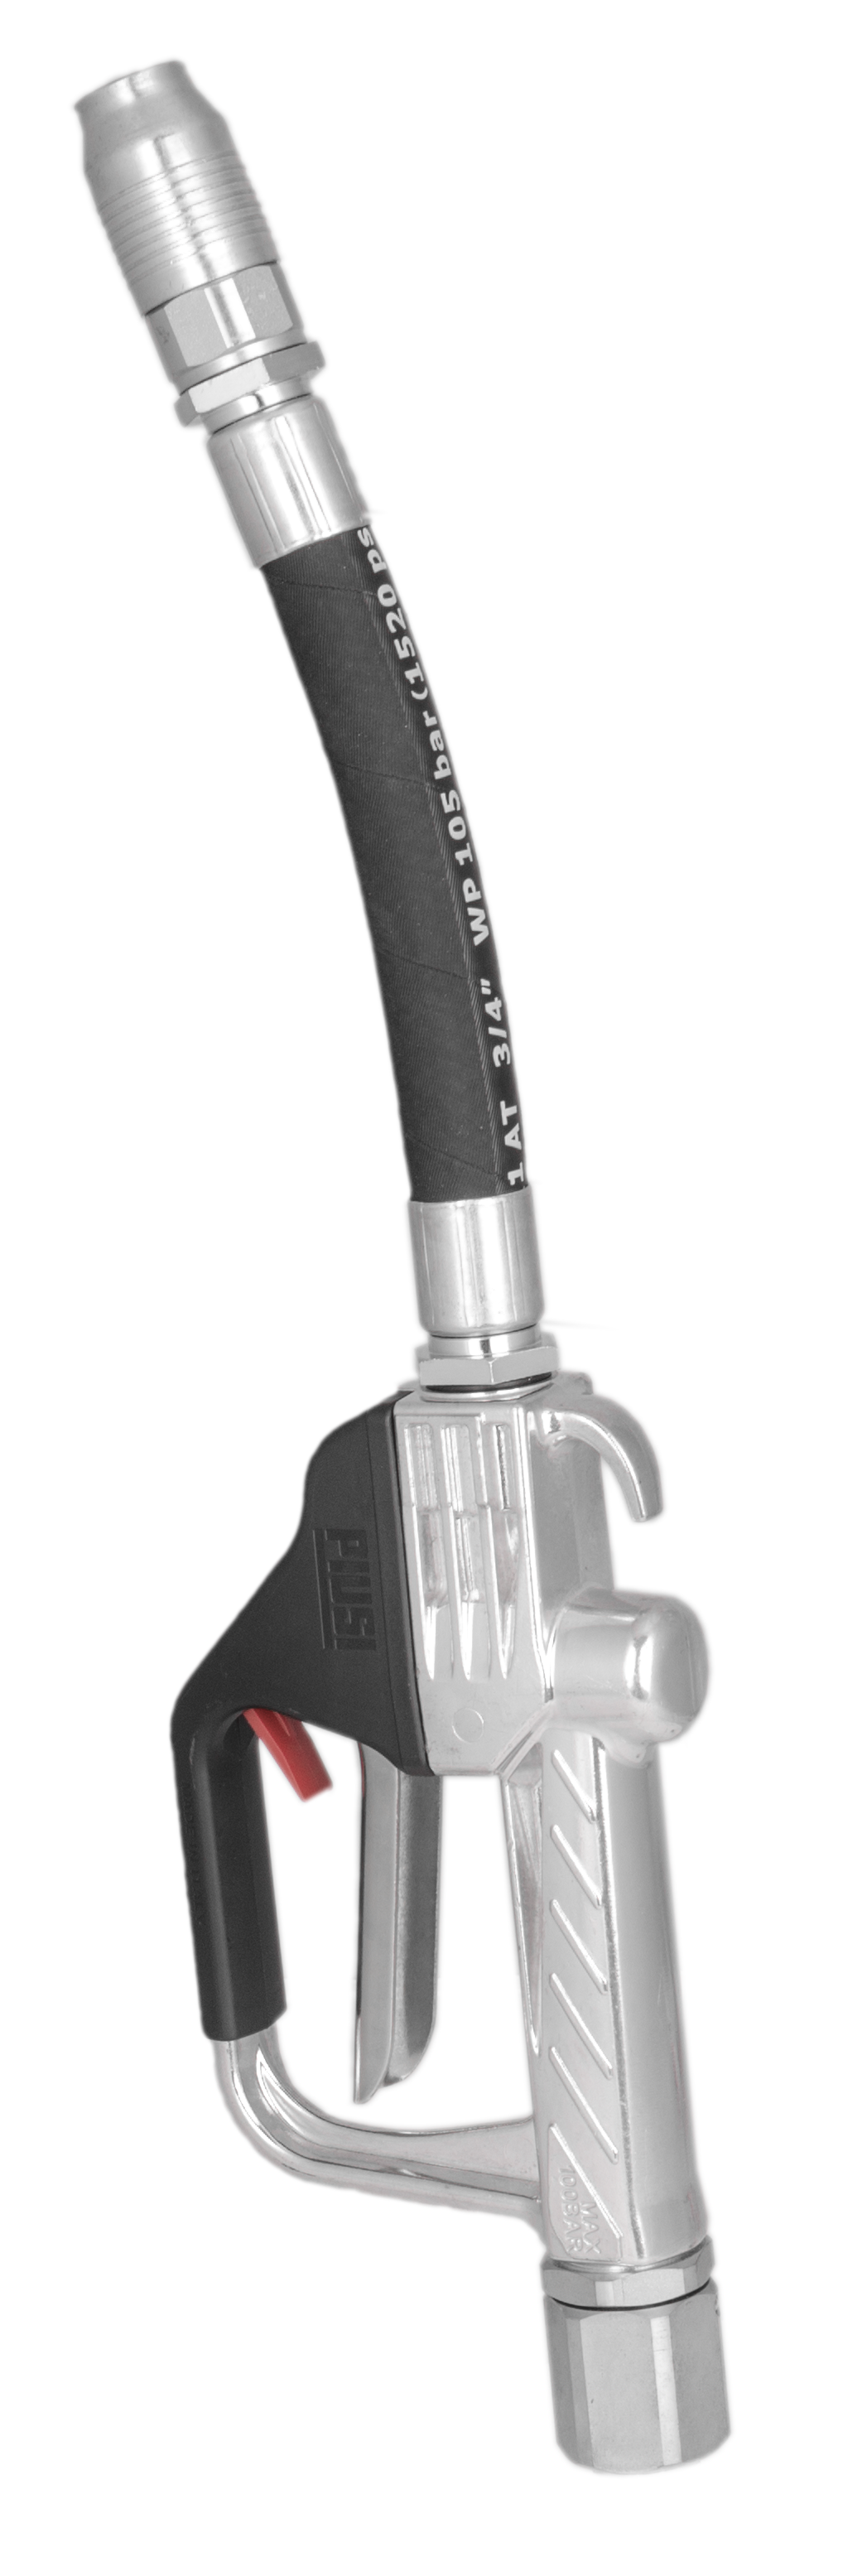 Zuwa Zapfpistole für Öle PISTOL-ONE, flexibel - max. Durchfluss 90